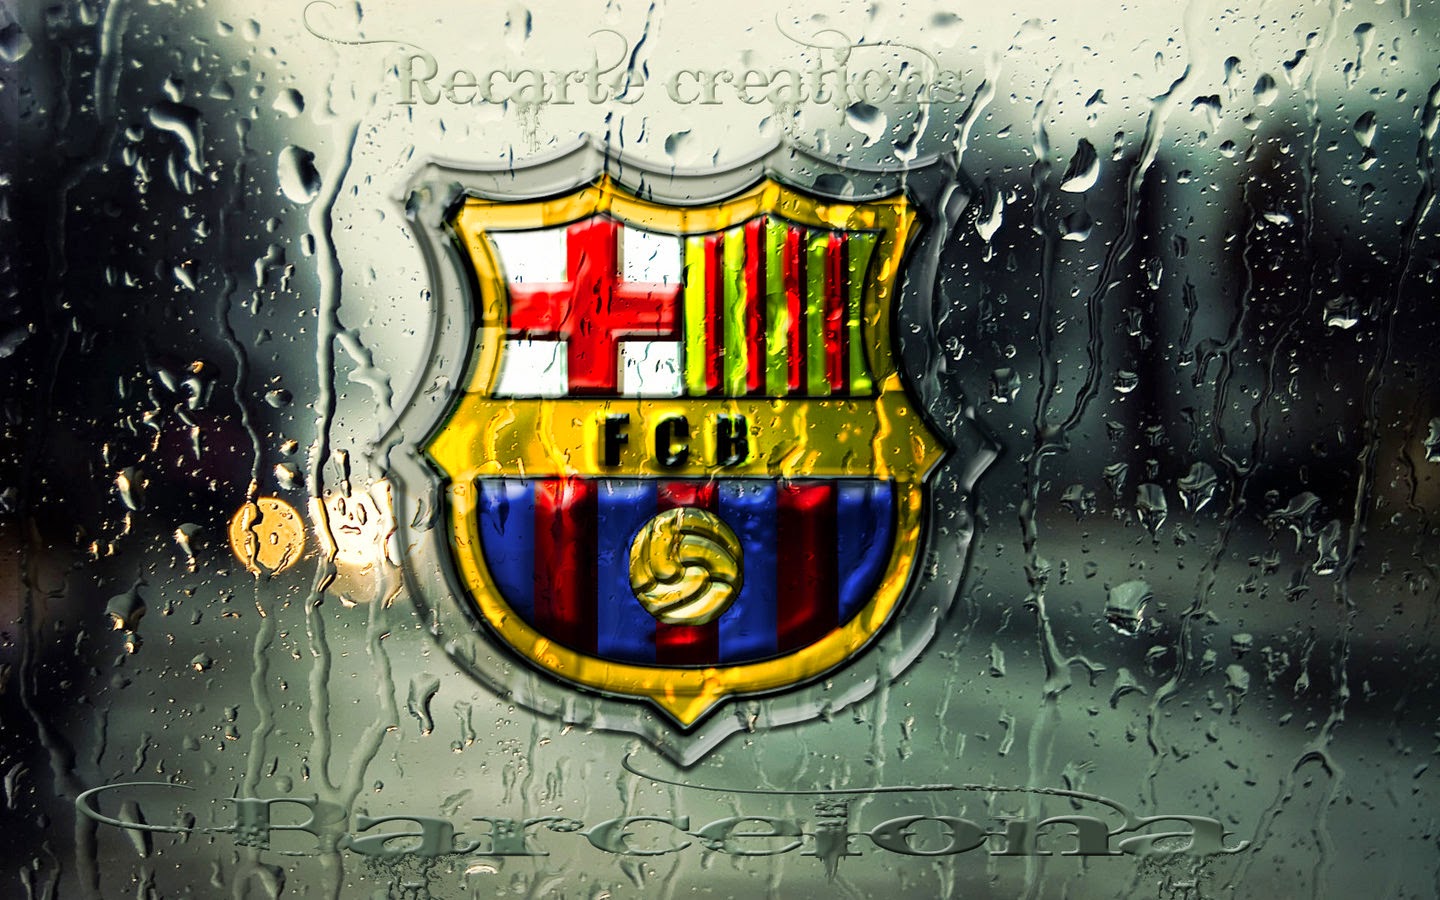 Logo Barcelona - Sự nghiệp bóng đá của Barcelona là vô cùng ấn tượng và đầy tính sáng tạo. Với hình ảnh logo của mình, Barcelona đã quyết định thể hiện cho khán giả thấy sự kiên định và tinh thần đại diện cho thành phố này. Hãy xem bức hình này và khám phá thêm về ý nghĩa đằng sau logo của đội bóng này.